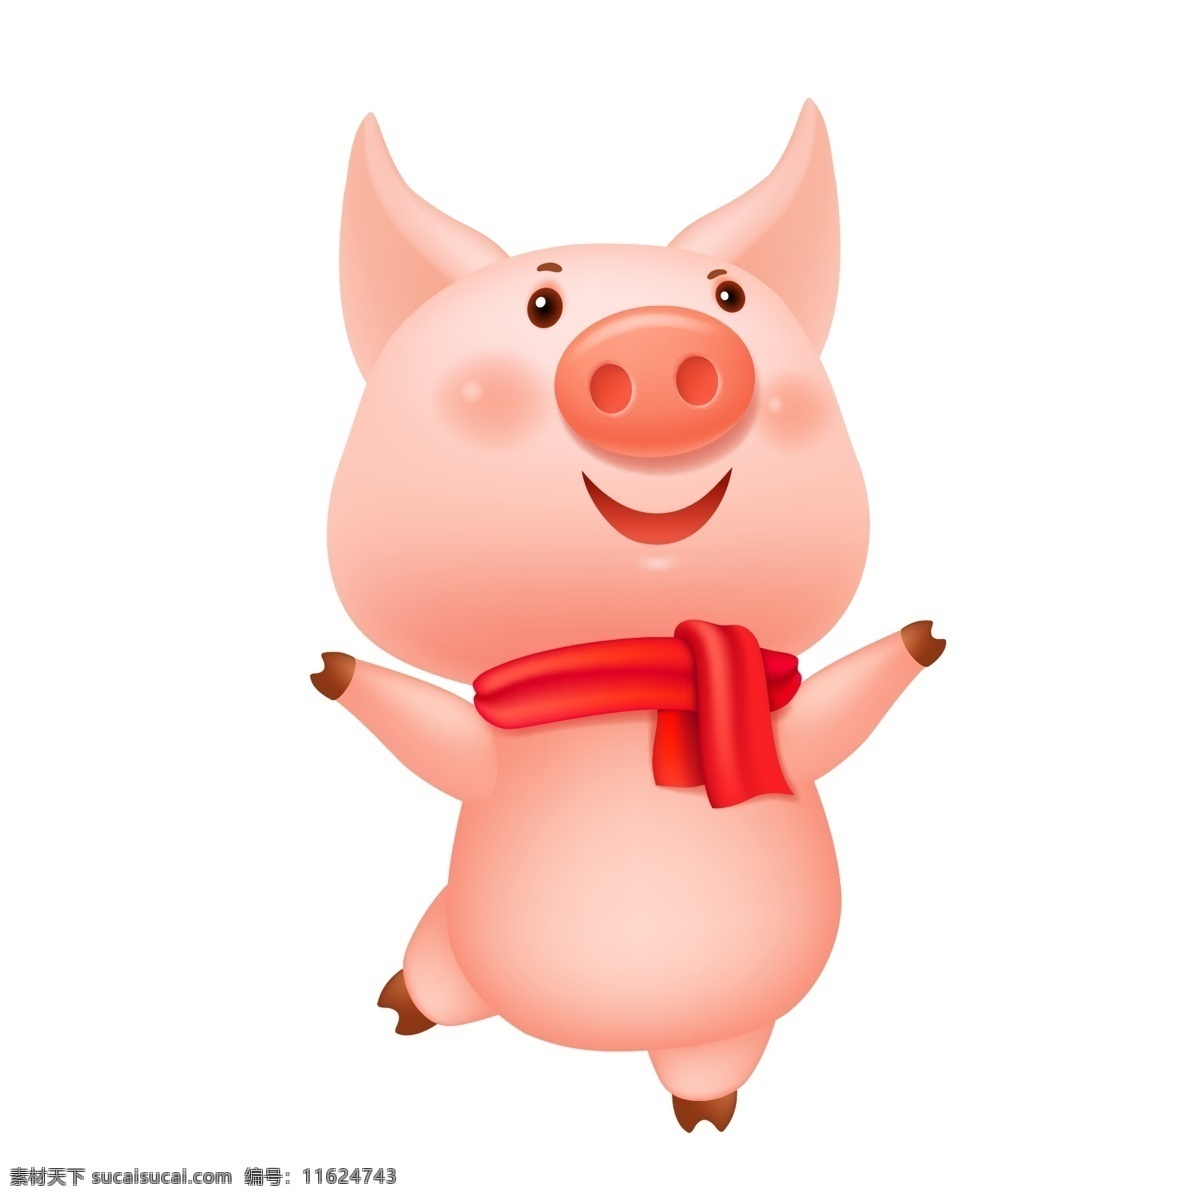 可爱 2019 猪 形象 元素 小猪 设计元素 手绘图案 简约 创意元素 粉色 猪年形象 猪形象 2019猪 猪年大吉 手绘元素